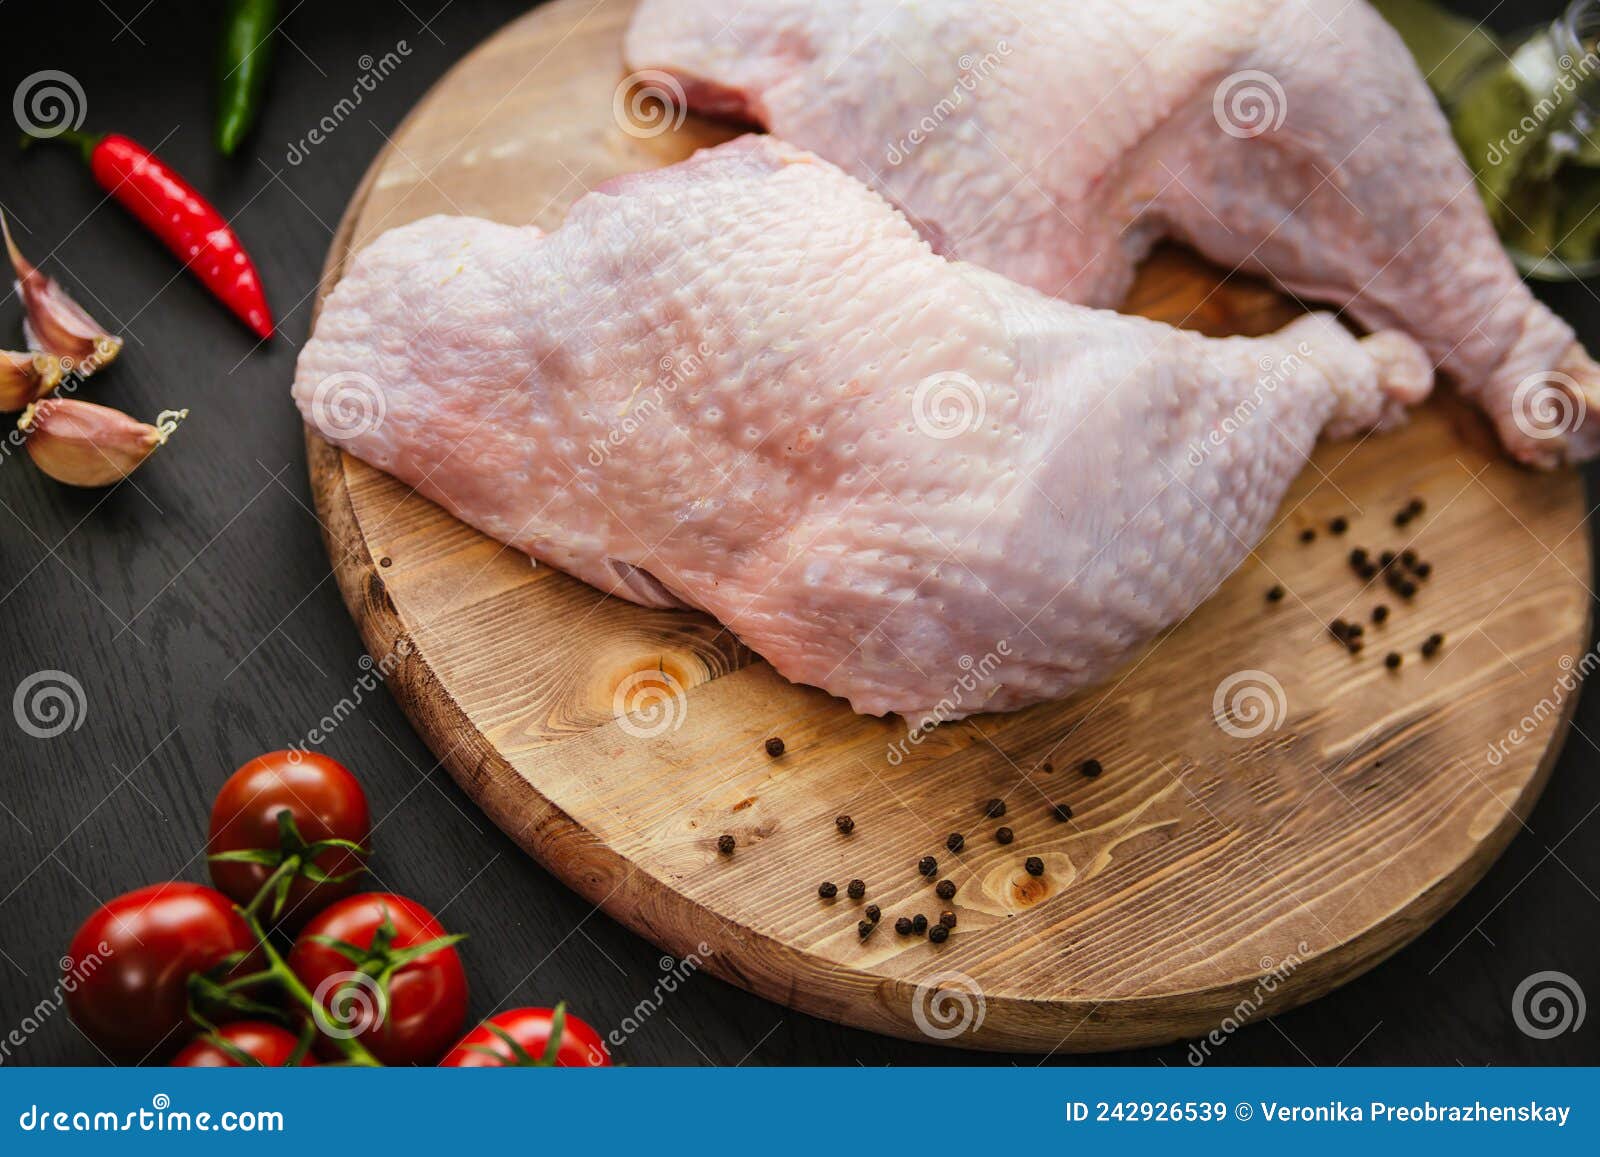 原始的火鸡腿 库存照片. 图片 包括有 蕃茄, 食物, 准备, 红色, 检查, 充分, 火鸡, 长度, 工作室 - 55673640